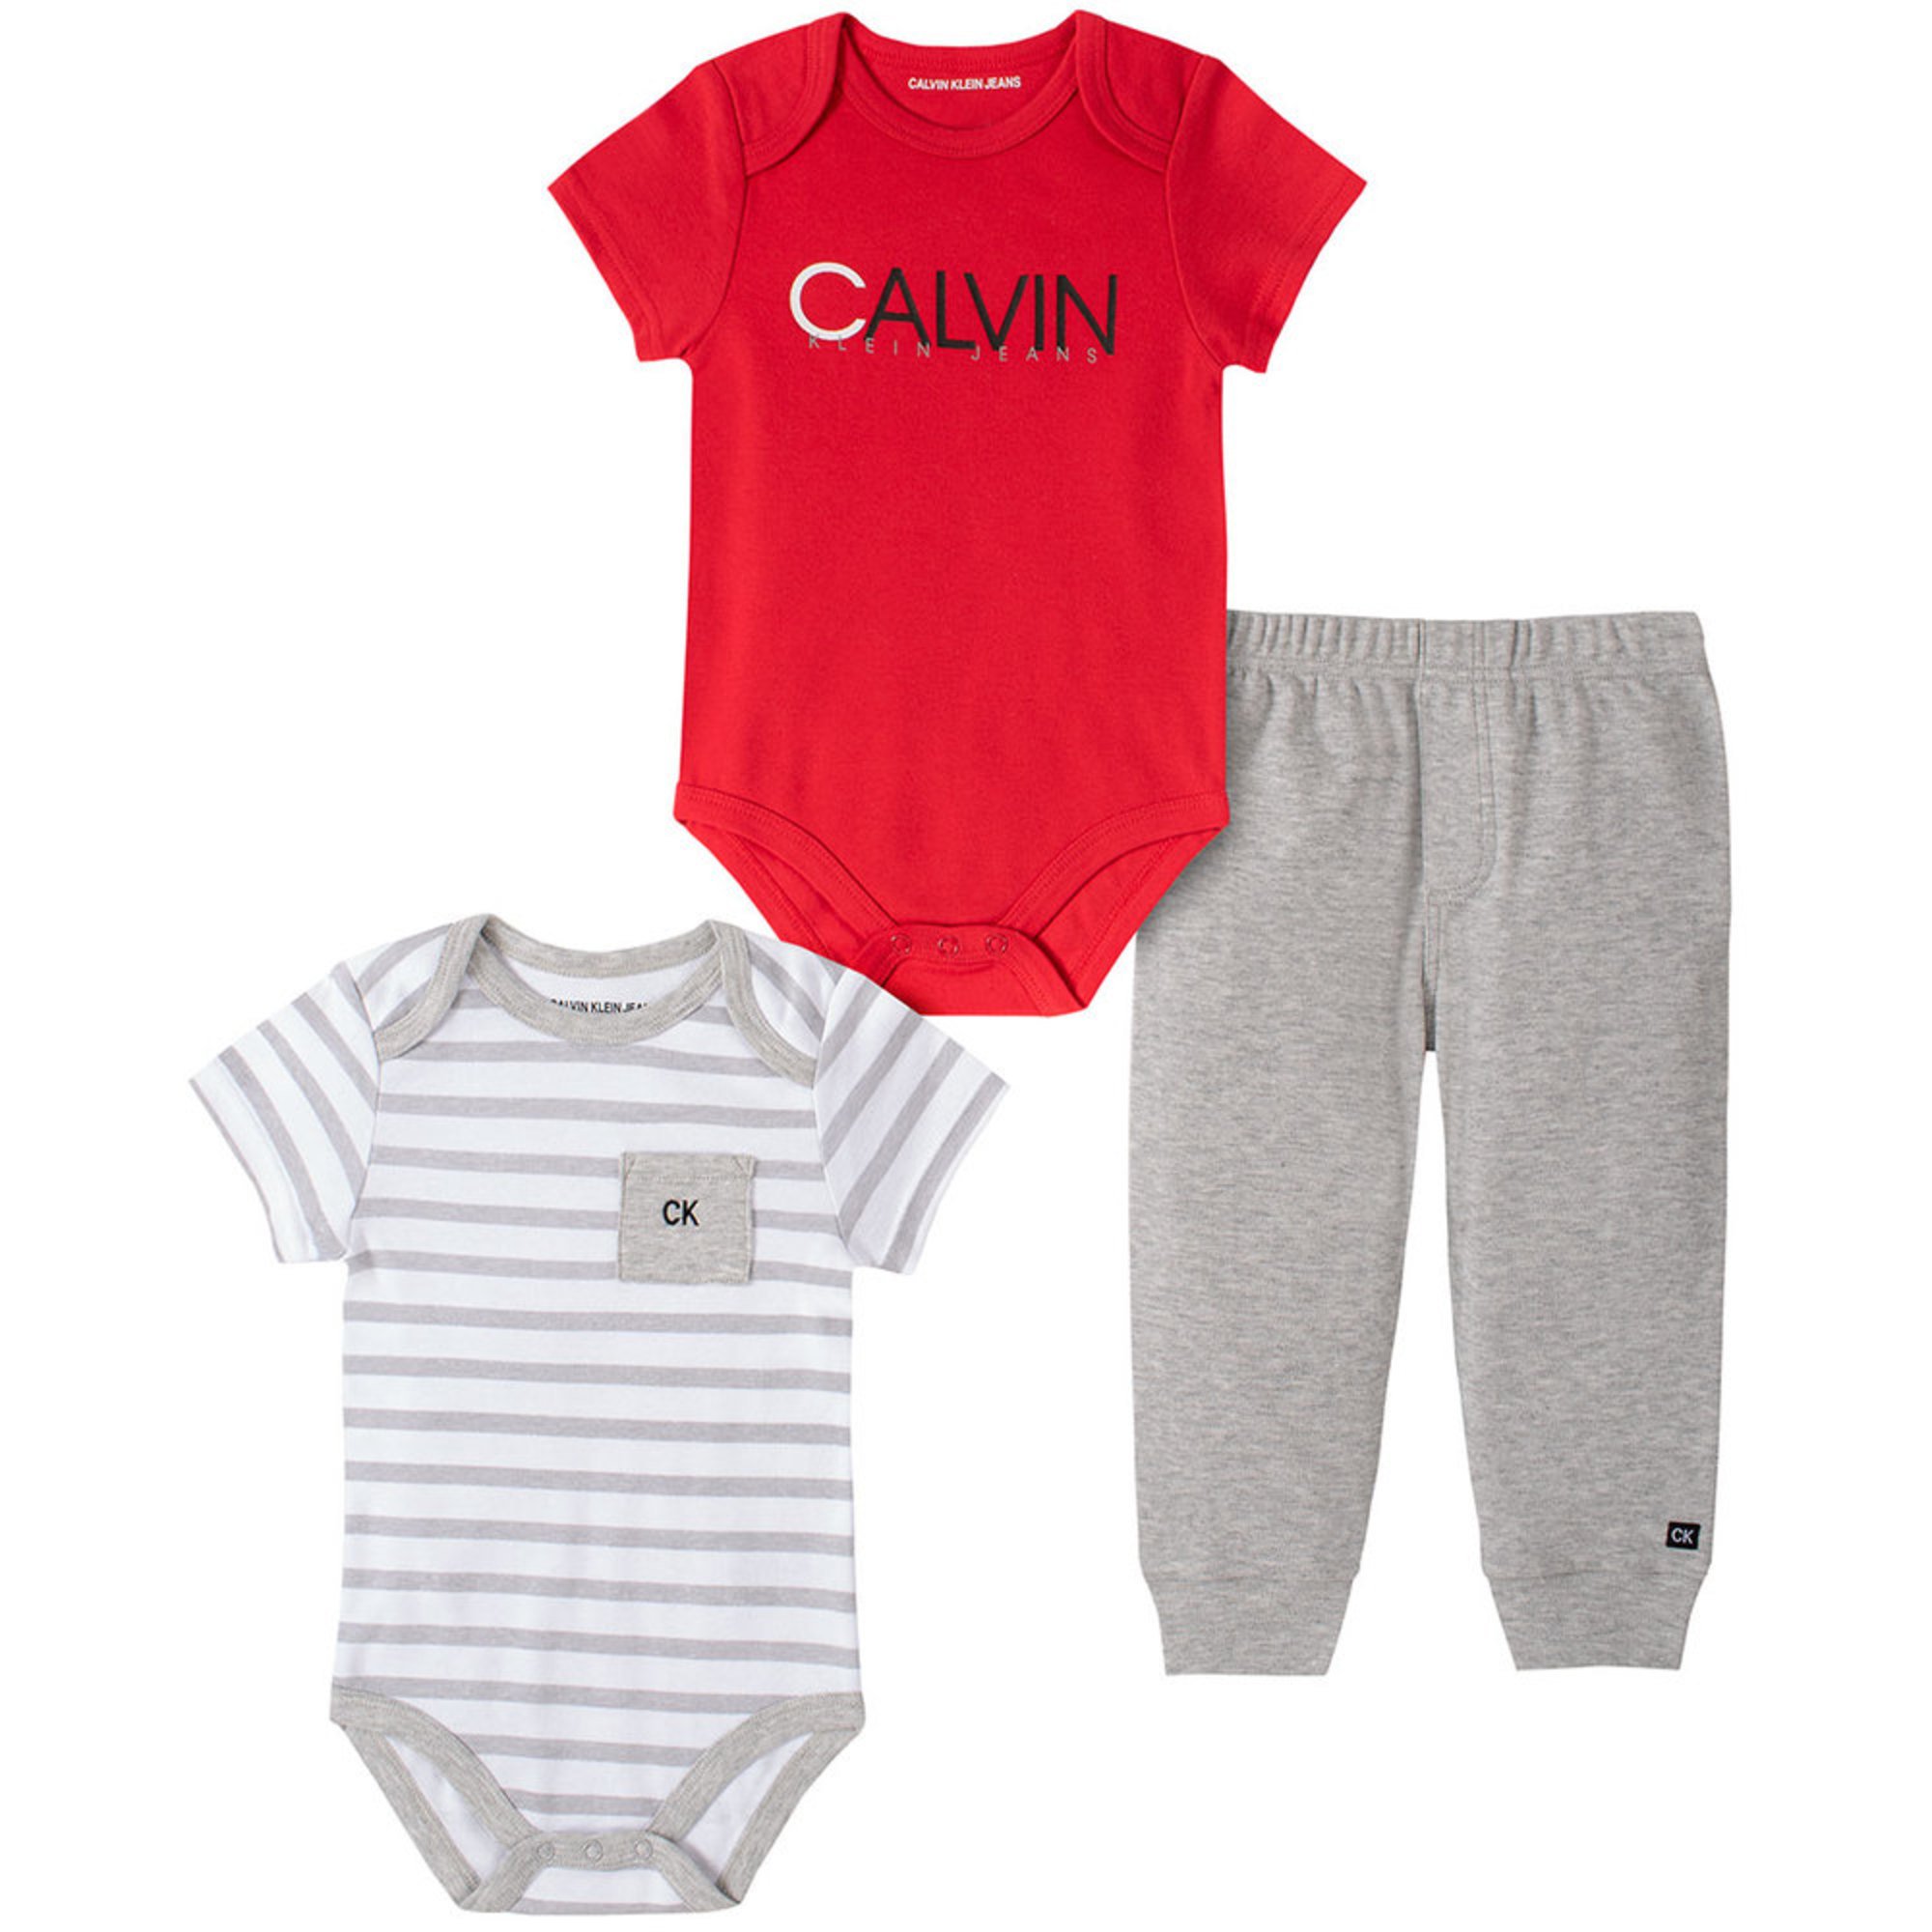 calvin klein baby boy sets